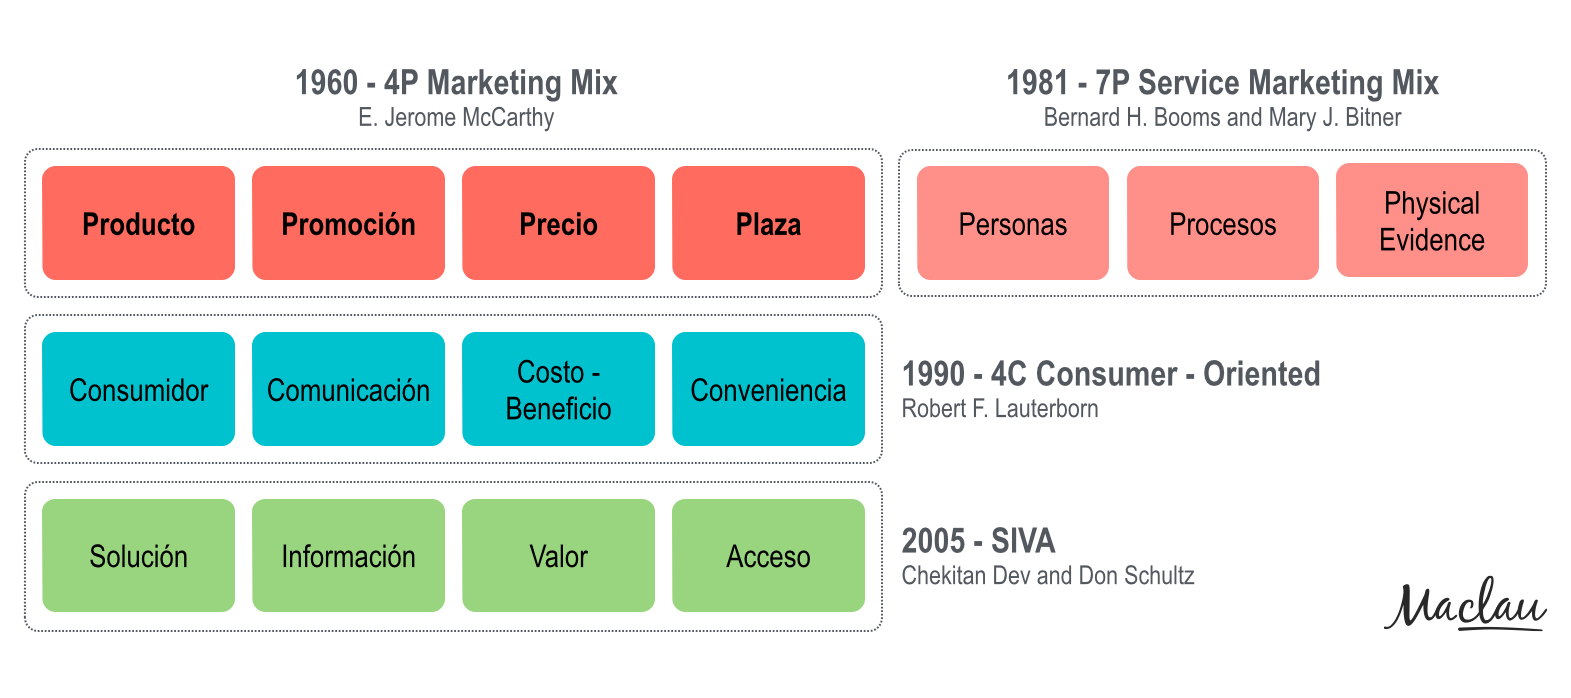 La evolución del «Marketing Mix» | María Claudia Posadas Maclau